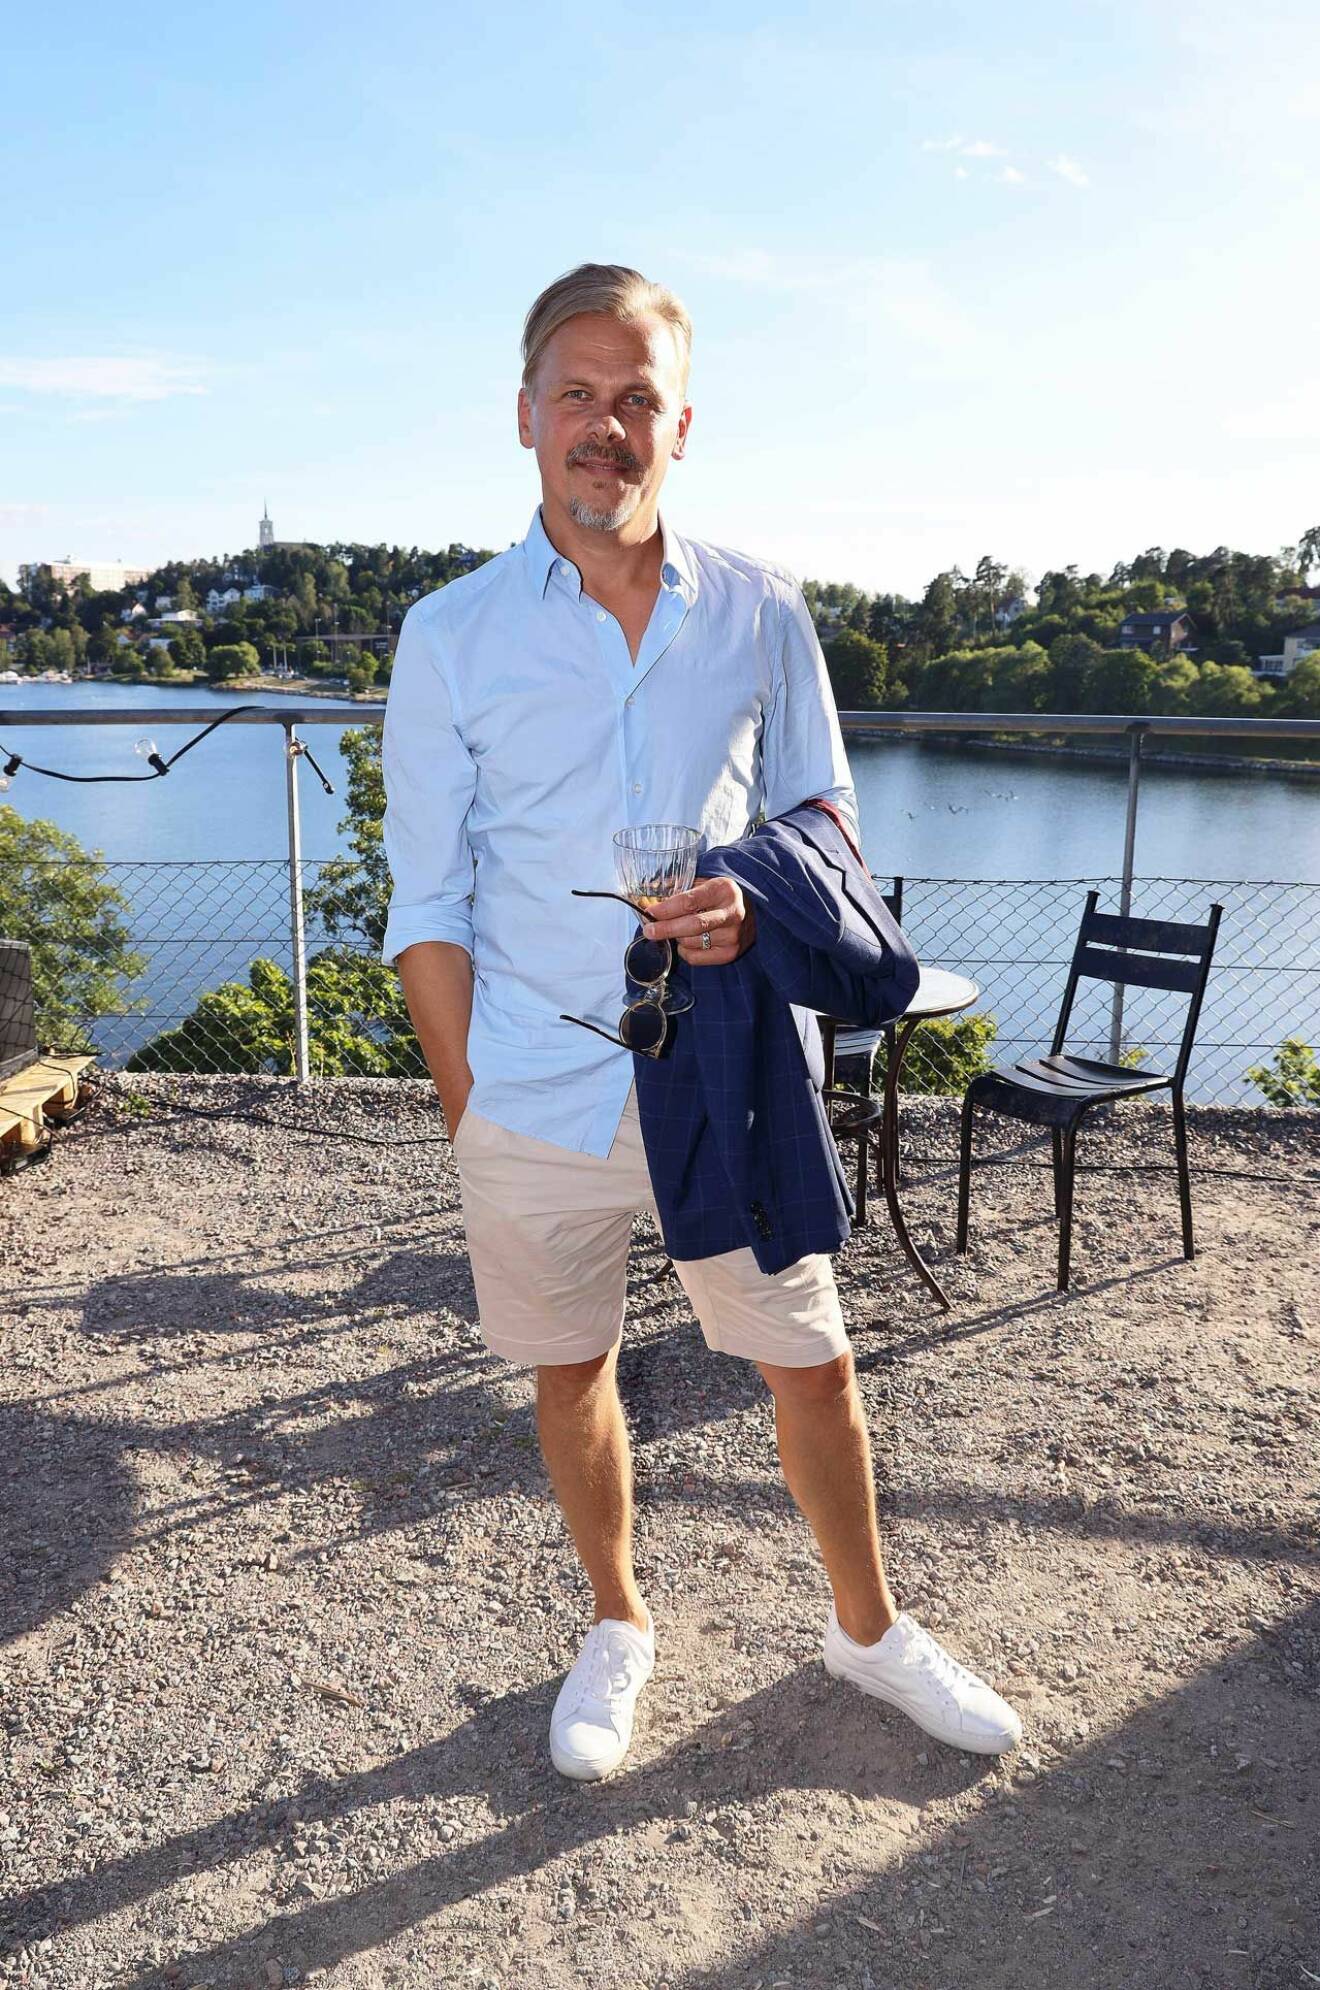 Även Carolas exkärlek, musikern Jimmy Källqvist, var somrig i ljusblå skjorta och shorts.